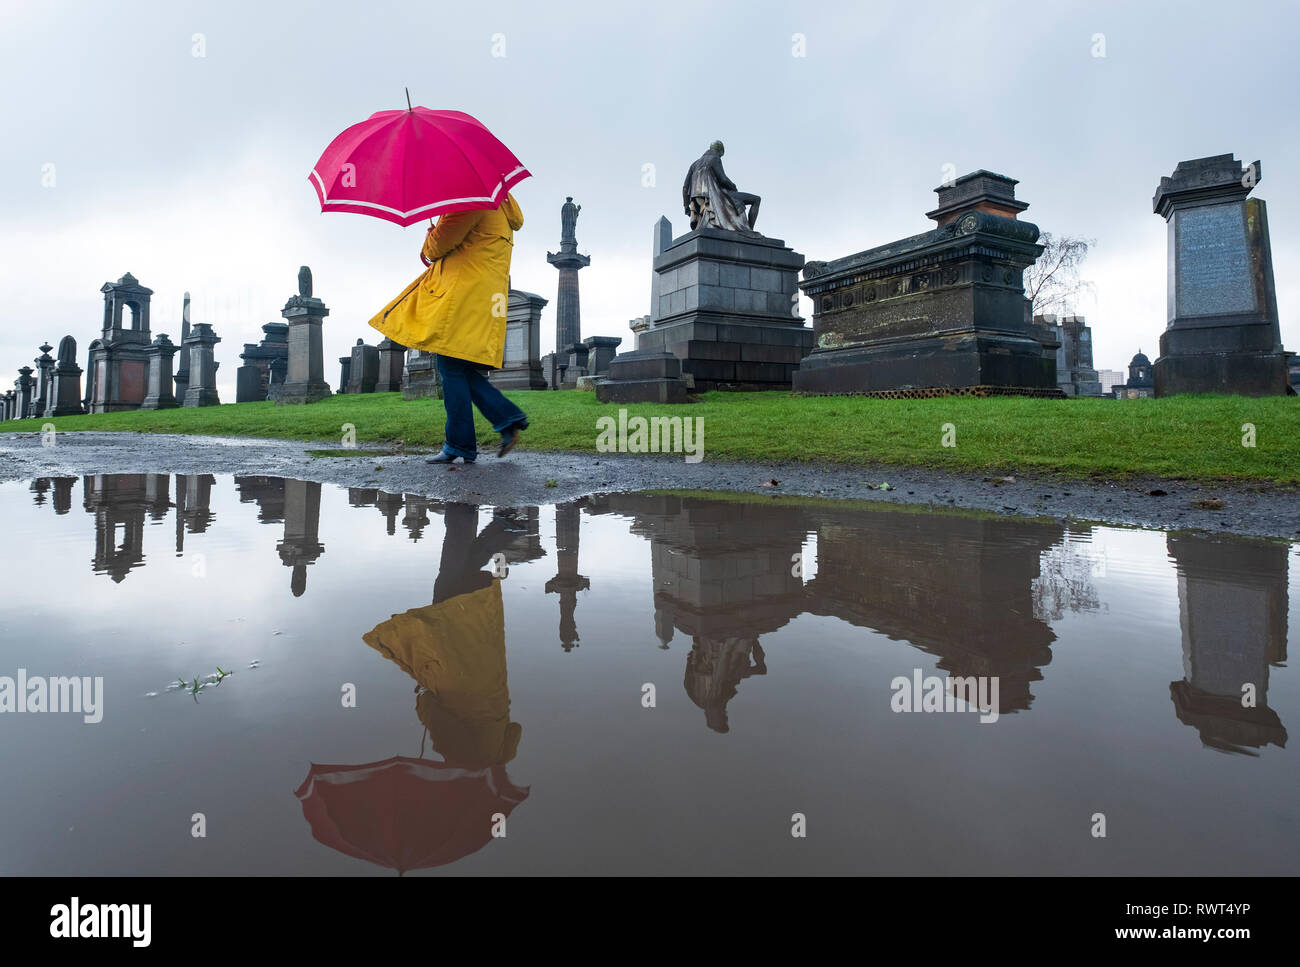 Frau in Gelb und Rot Regenschirm in Pfütze wandern in Nekropole Friedhof in Glasgow, Schottland, Großbritannien wider Stockfoto